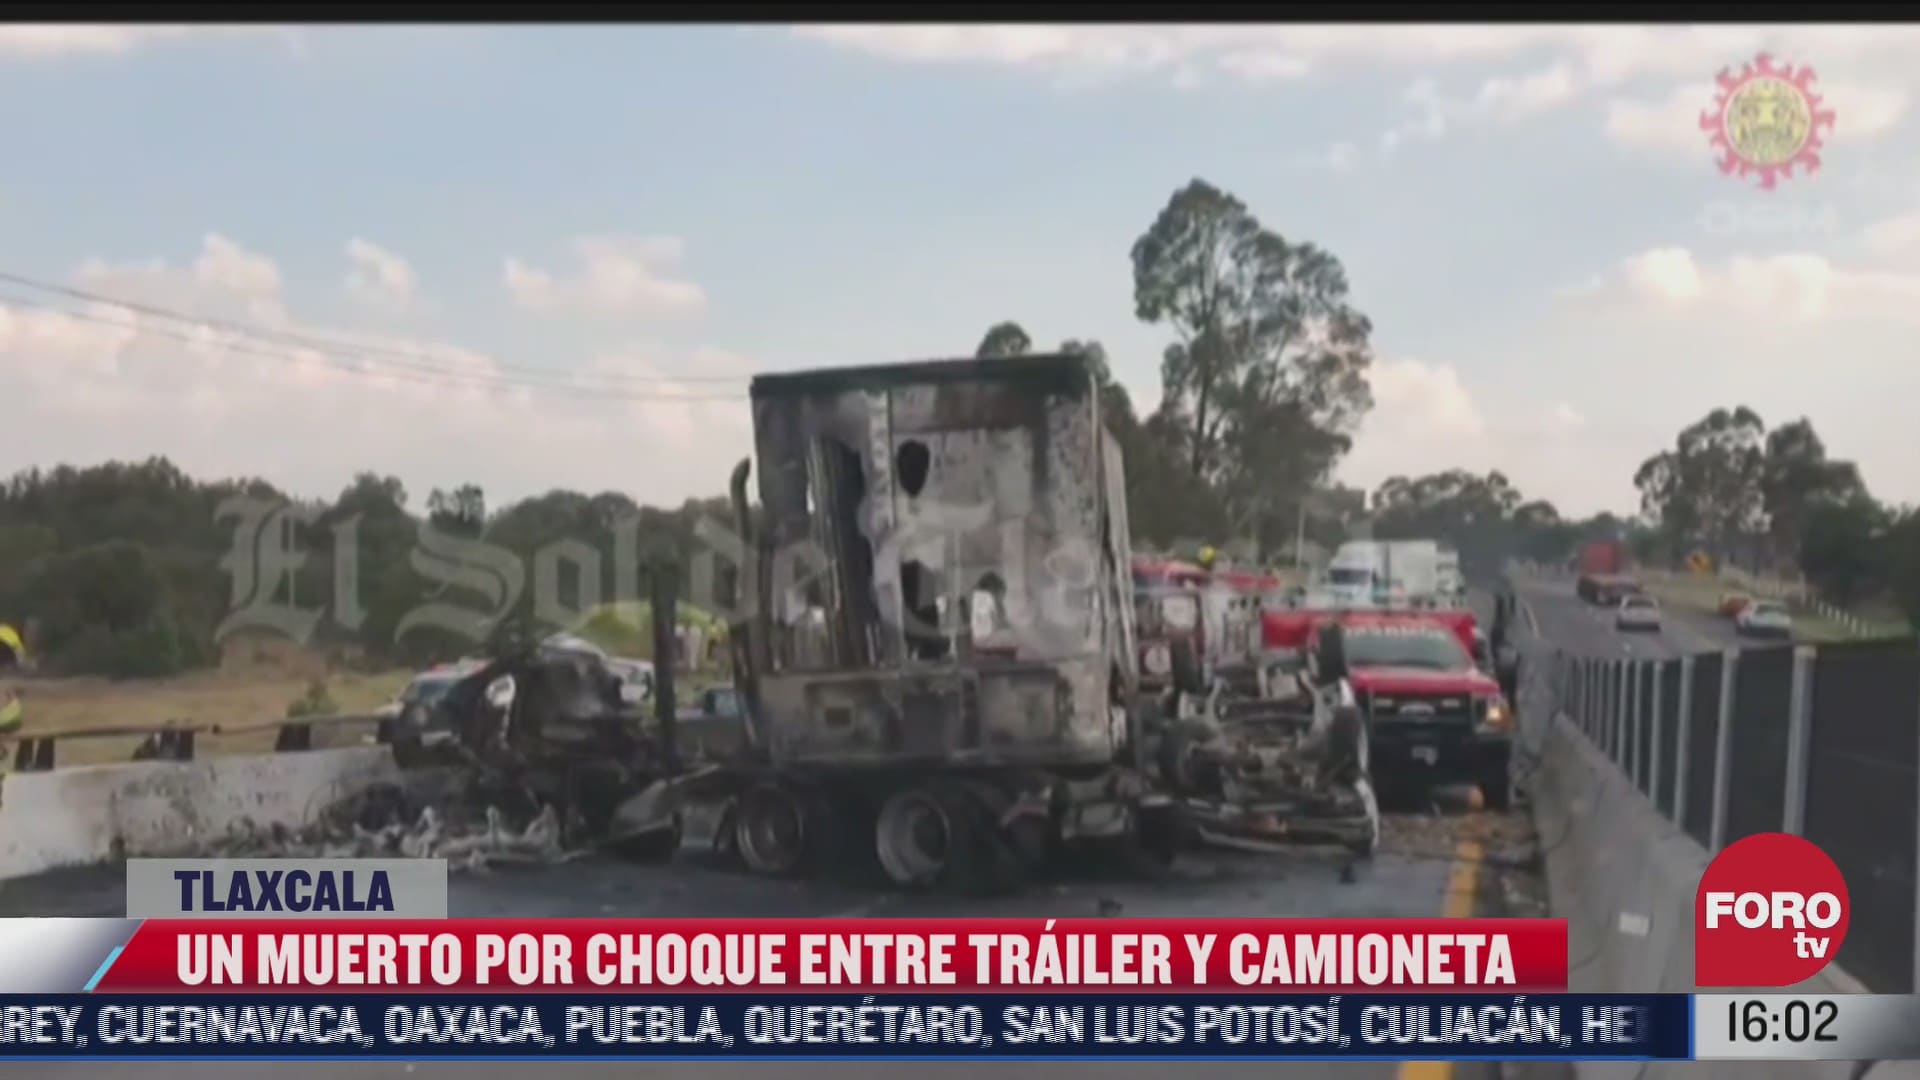 choque entre trailer y camioneta deja un muerto en tlaxcala